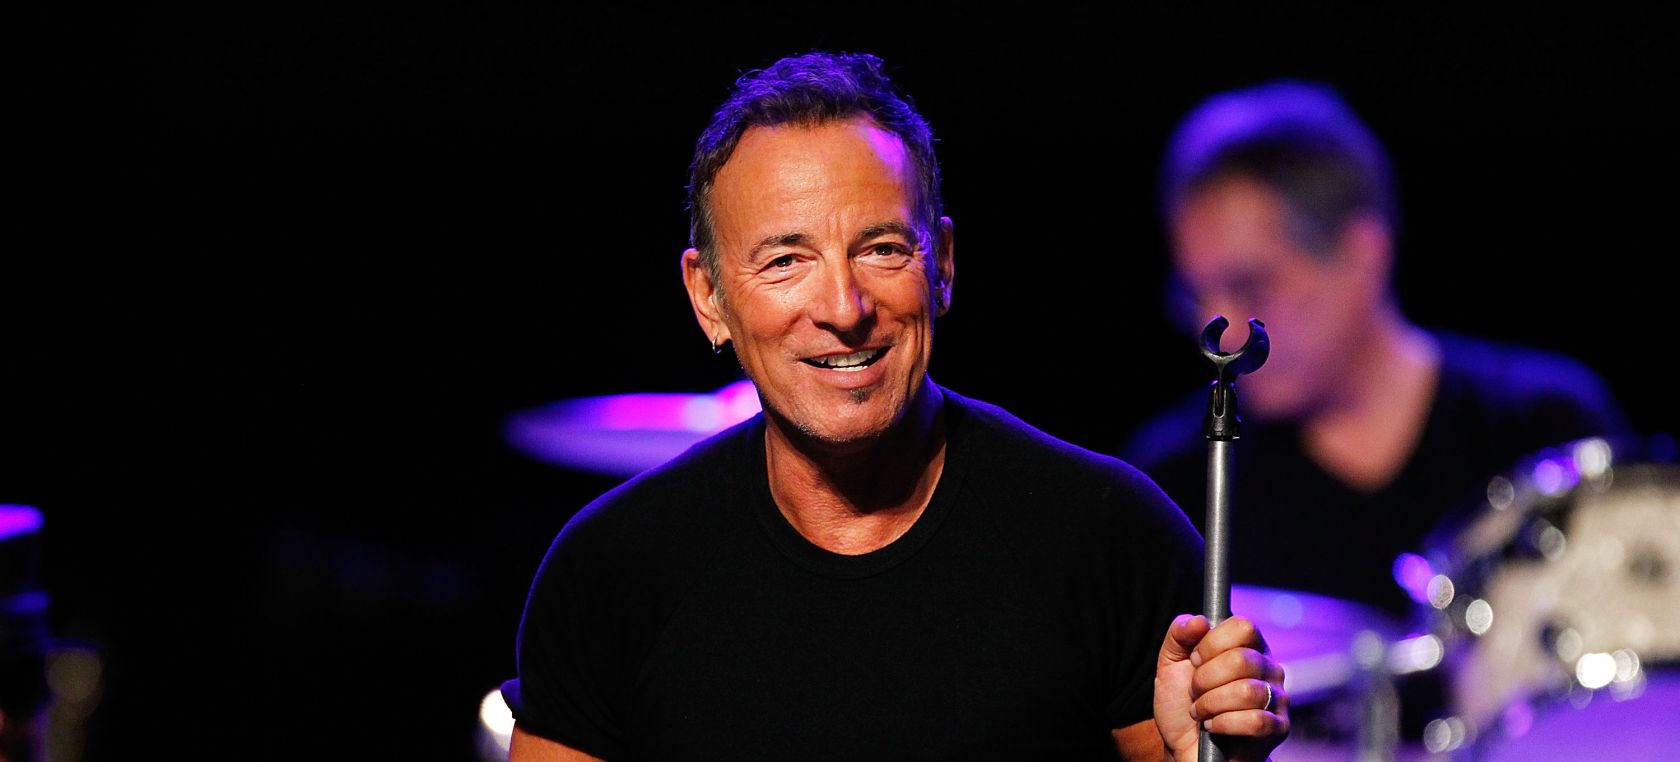 Bruce Springsteen lanzará un nuevo disco este año